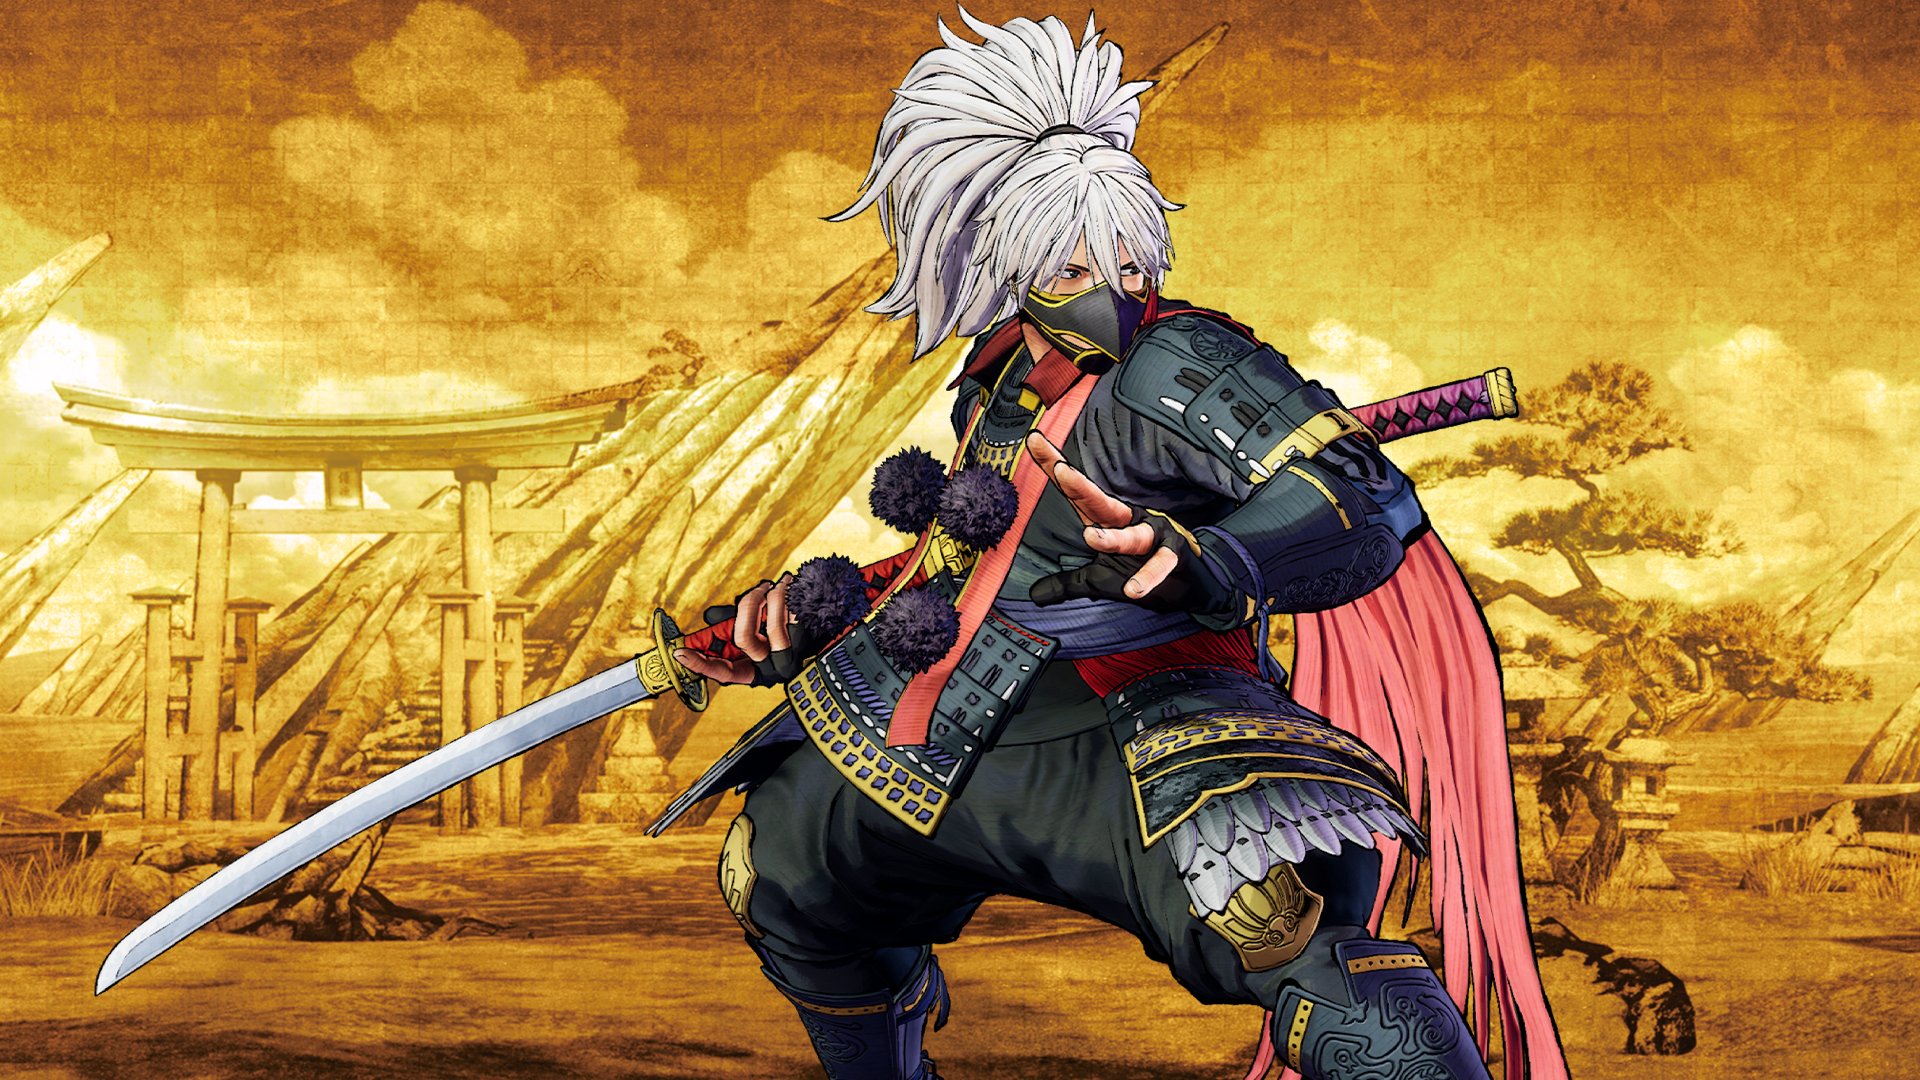 Samurai Shodown File Size On Xbox One Revealed